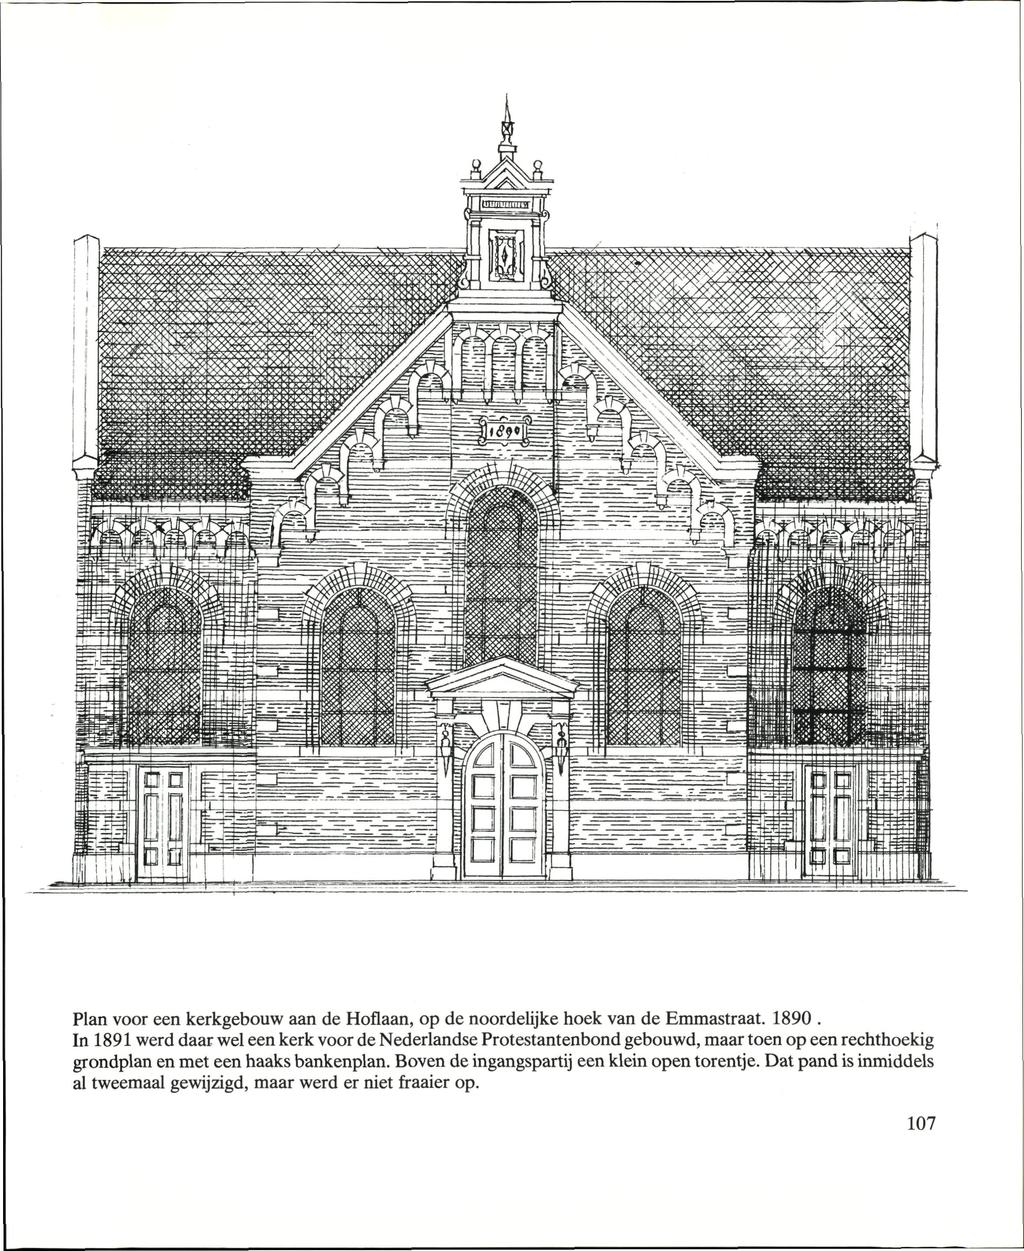 Plan voor een kerkgebouw aan de Hoflaan, op de noordelijke hoek van de Emmastraat. 1890.